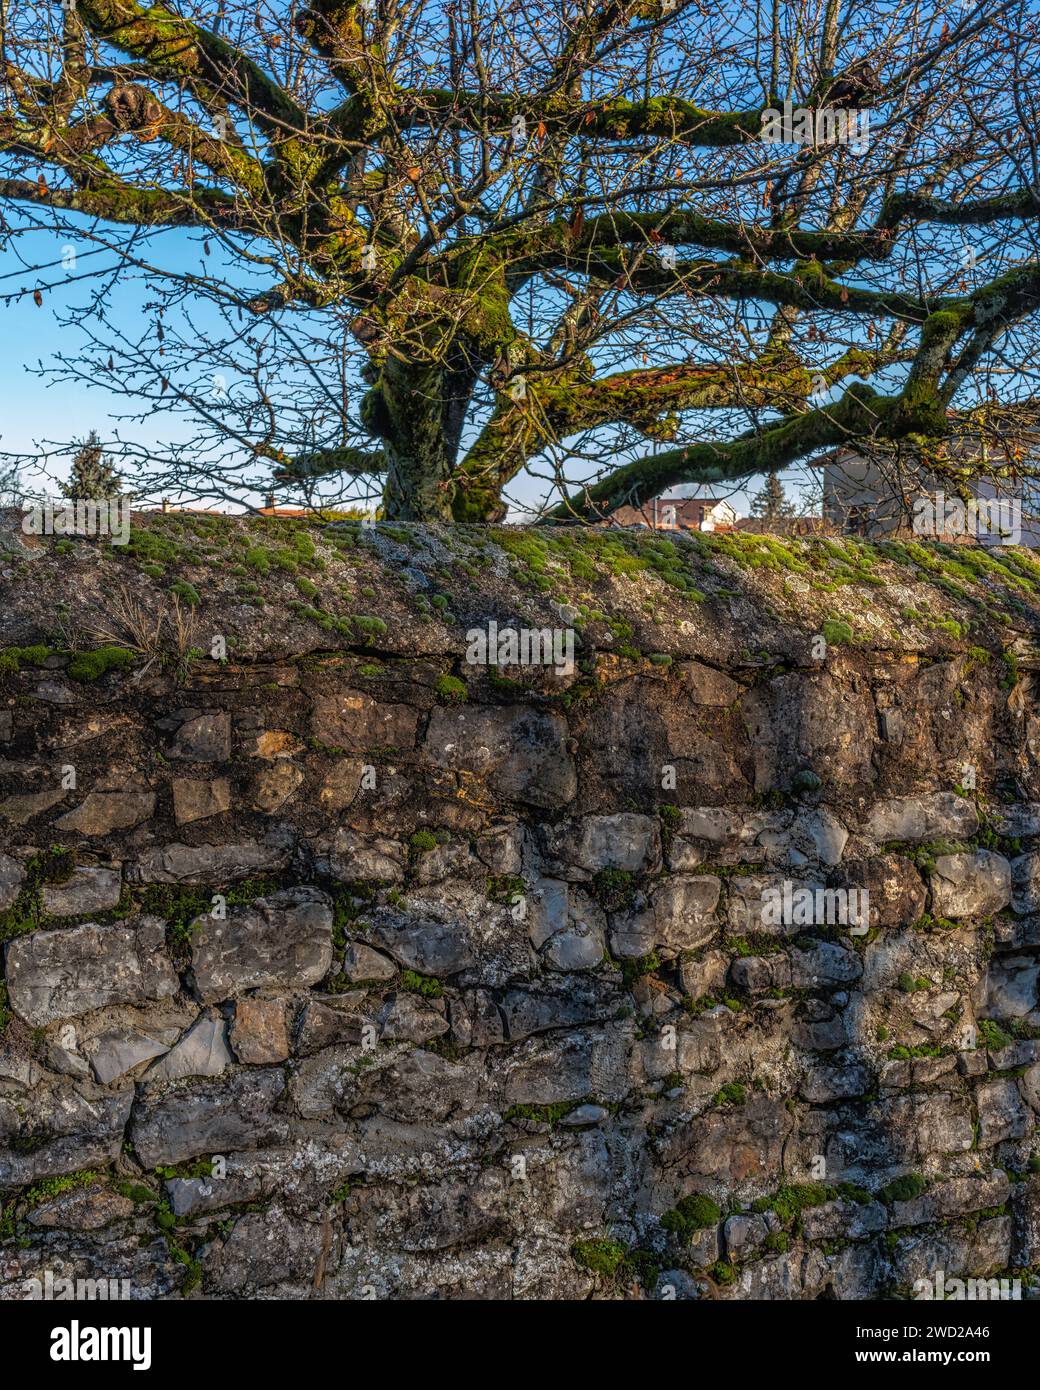 Las paredes de piedra seca cubiertas de musgo rodean las casas privadas. Saint-Quentin-Fallavier, departamento de Isère, Rhône región de Auvernia-Ródano-Alpes, Francia, Europa Foto de stock